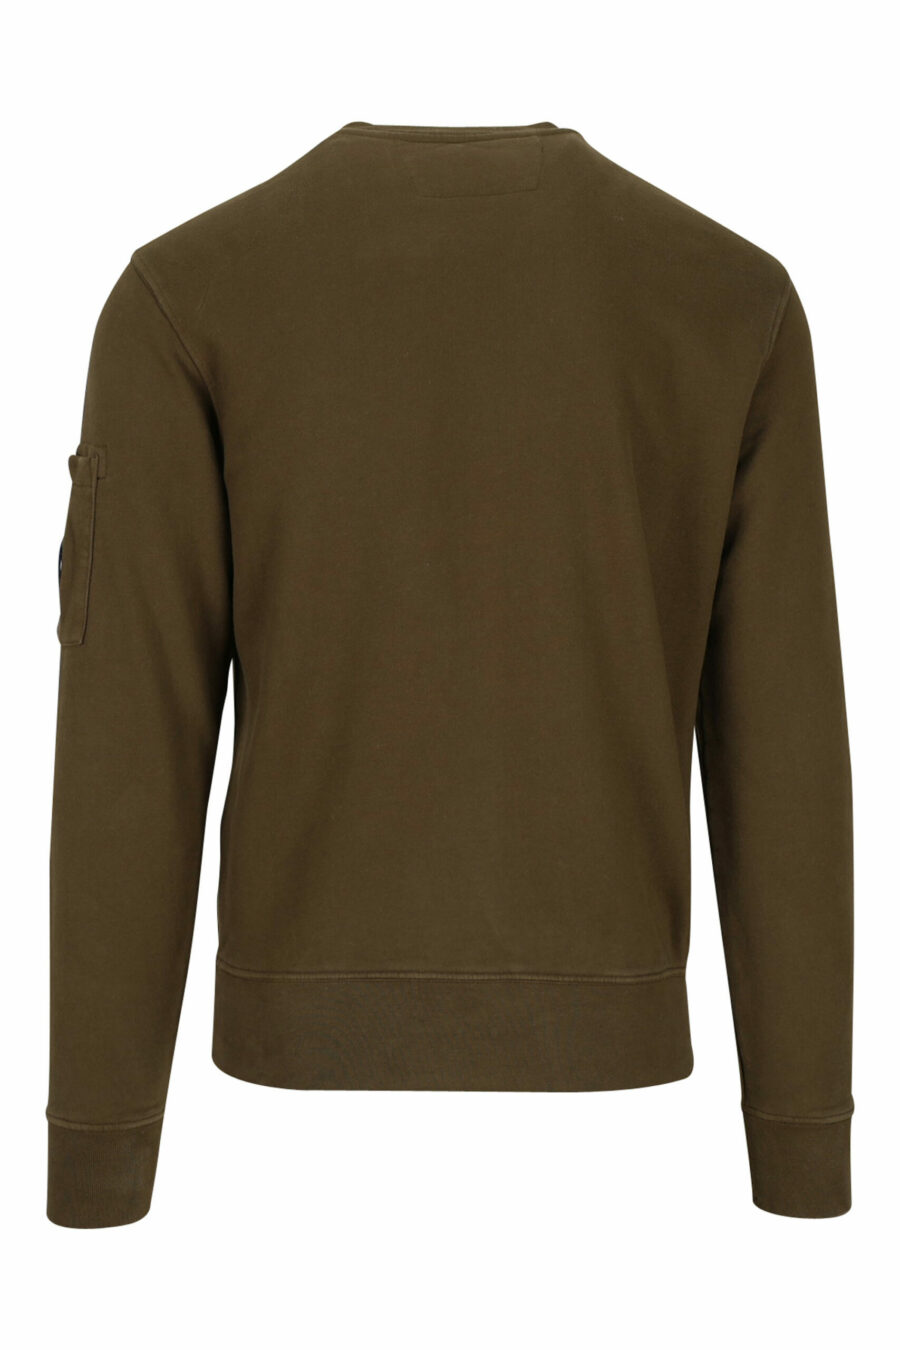 Militärgrünes Sweatshirt mit seitlicher Logolinse - 7620943598582 2 skaliert